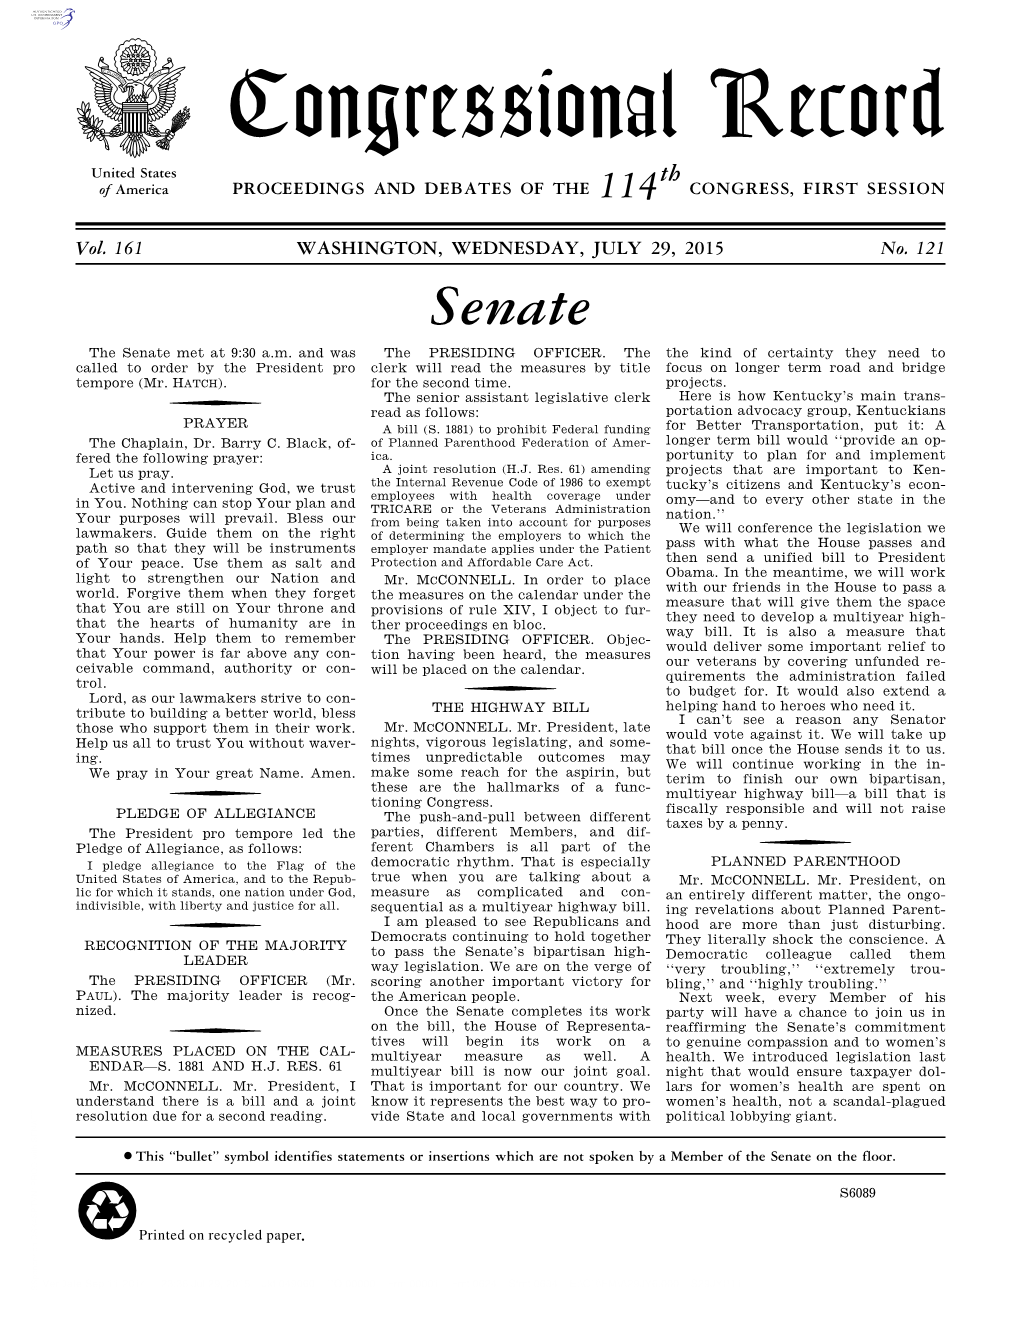 Senate Section (PDF)